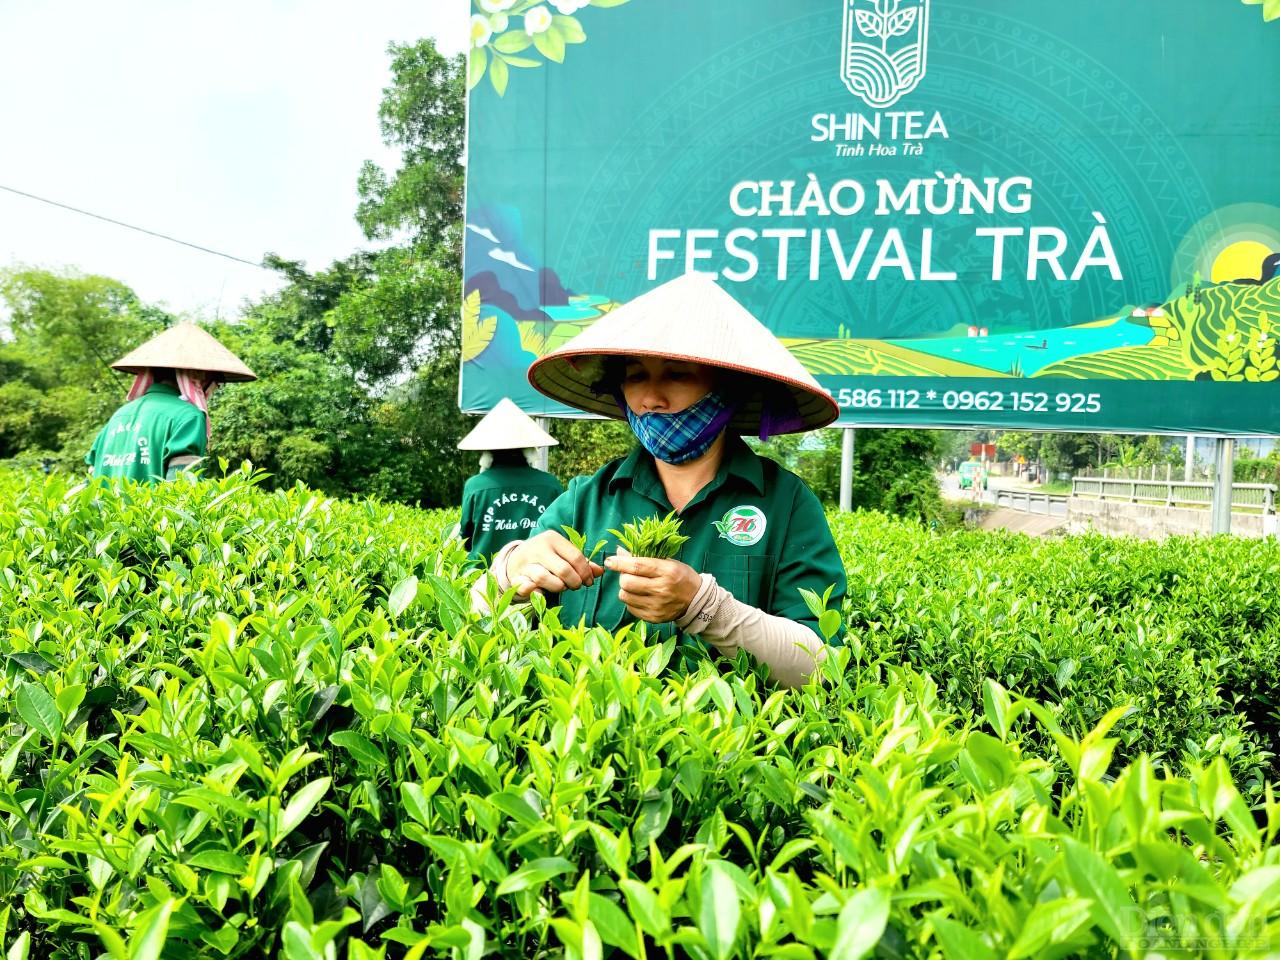 Thái Nguyên là tỉnh có tiềm năng phát triển về lĩnh vực nông nghiệp, phát triển sản phẩm du lịch gắn liền với nông nghiệp, nông thôn (Ảnh: Vũ Phường)